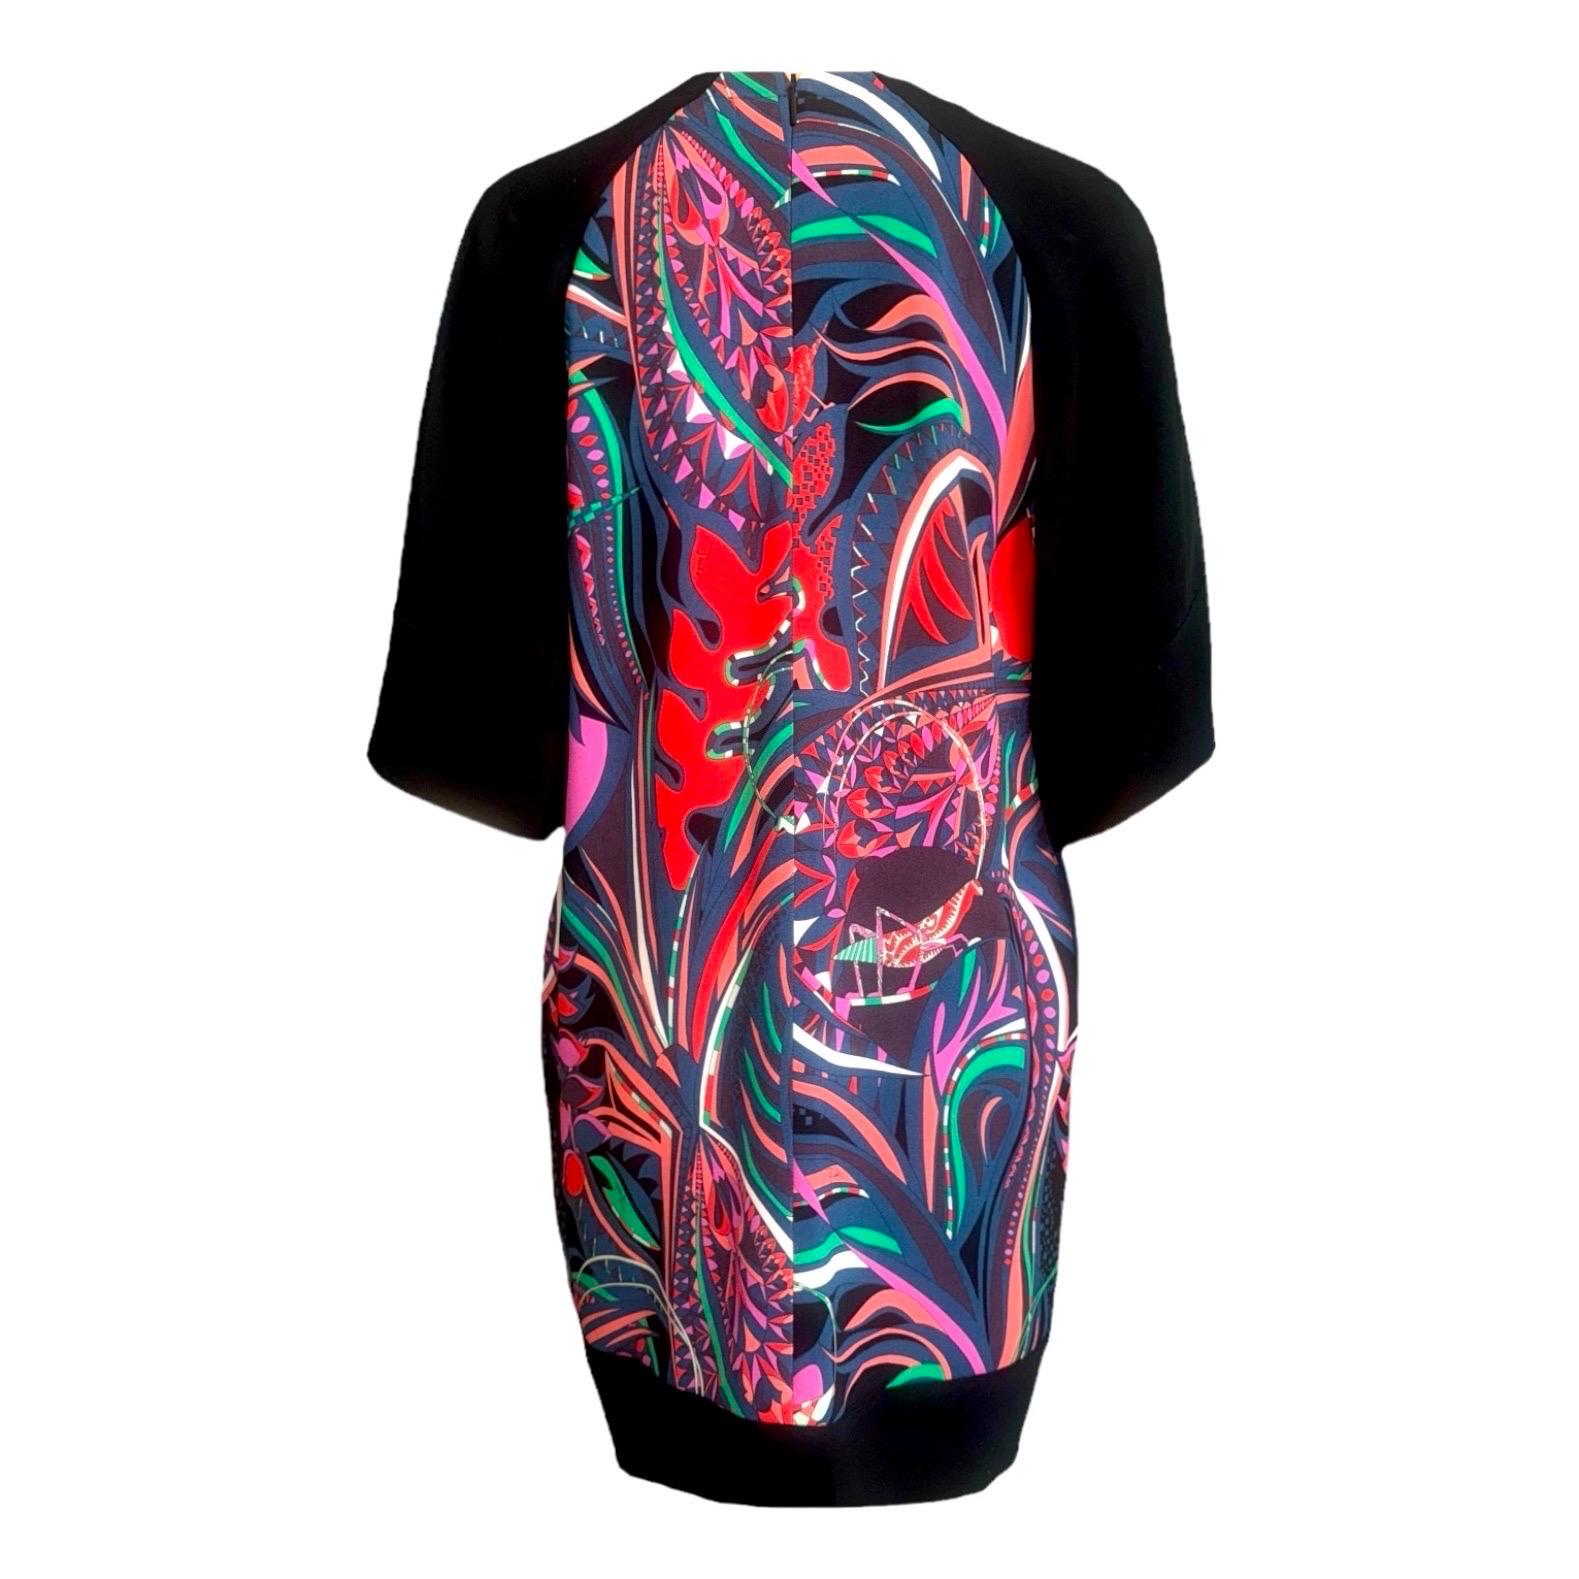 Schönes Kleid von EMILIO PUCCI
Signature Piece mit dem zeitlosen EMILIO PUCCI-Print in atemberaubenden Farben
Hergestellt aus feinstem, weichem Stoff
Gefüttert
